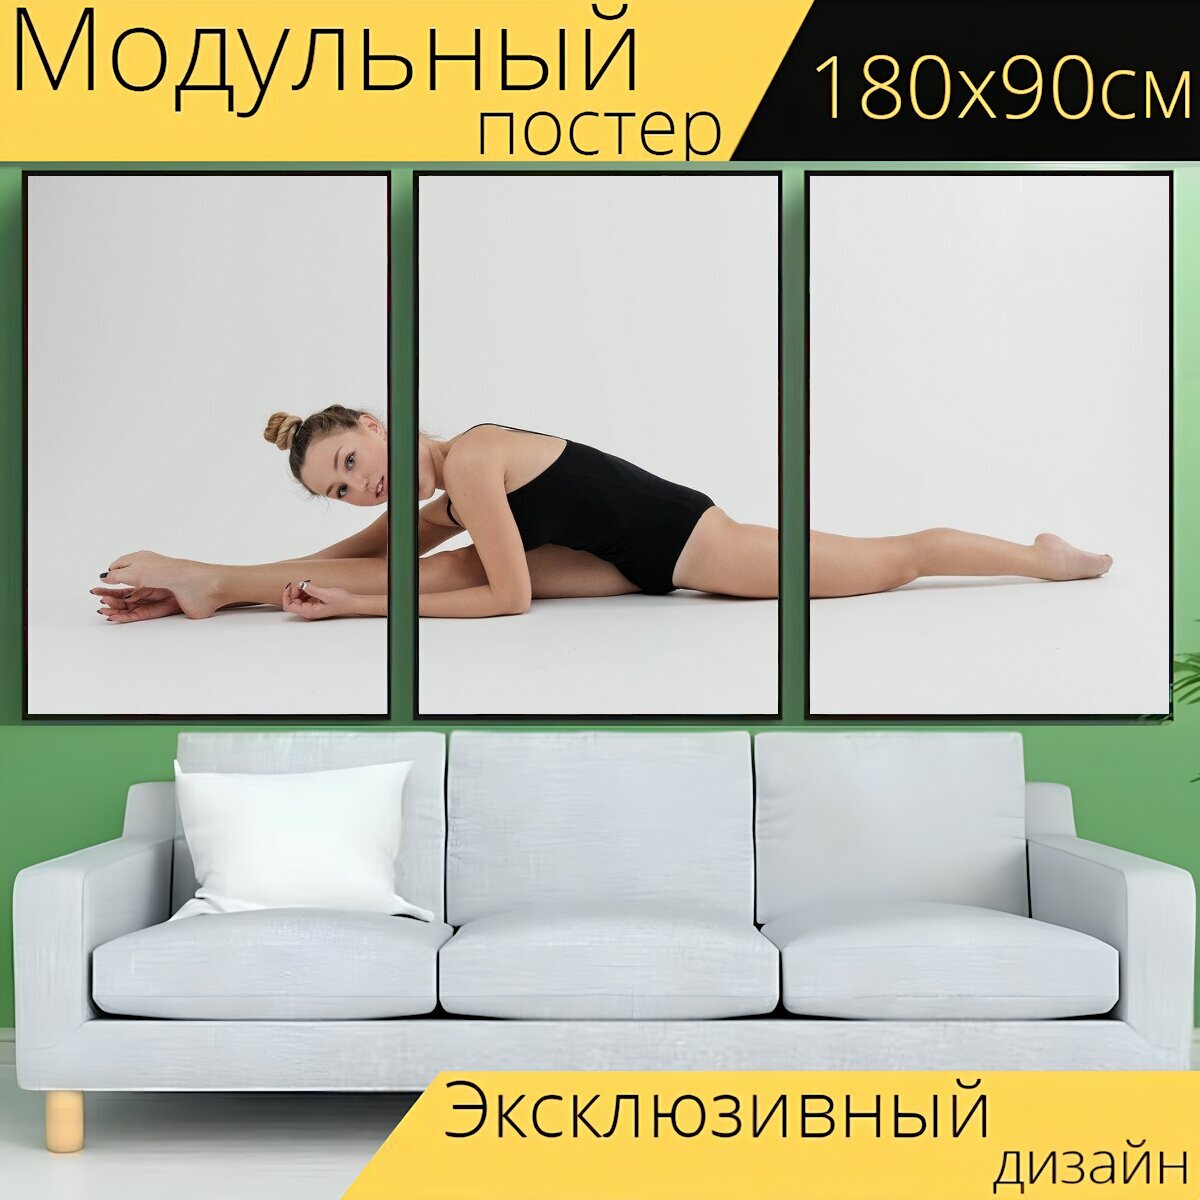 Модульный постер "Спорт, гимнастика, фитнес" 180 x 90 см. для интерьера